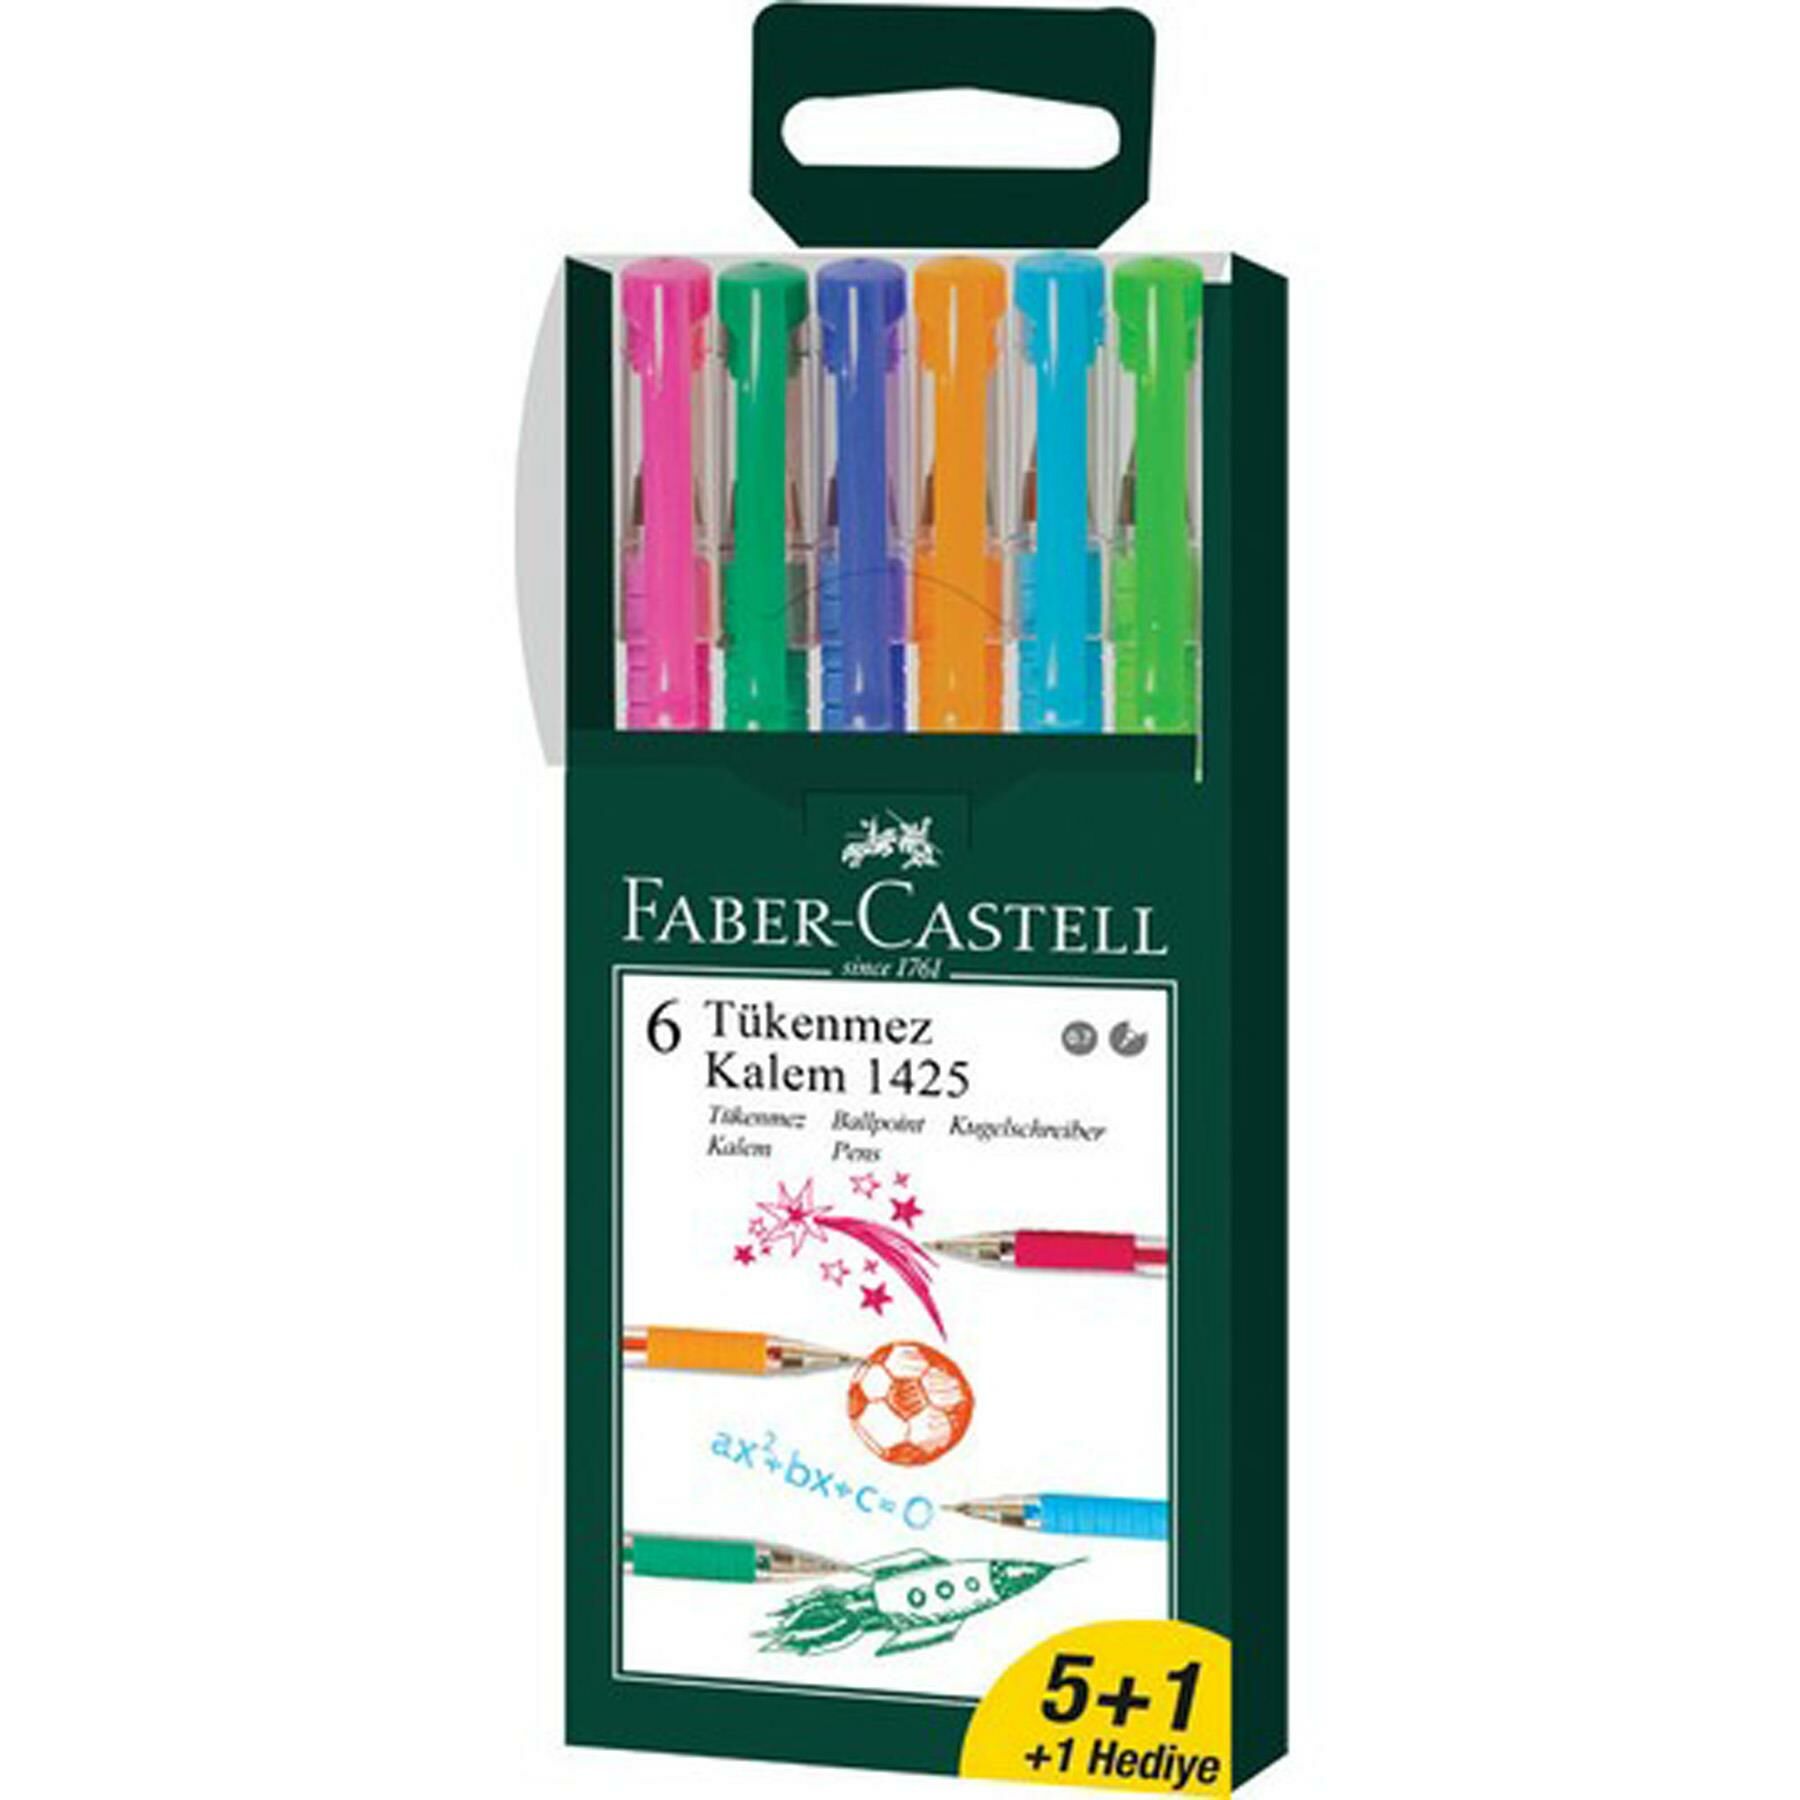 Faber Castell 5+1 Tükenmez Kalem 1425 (1 Paket)